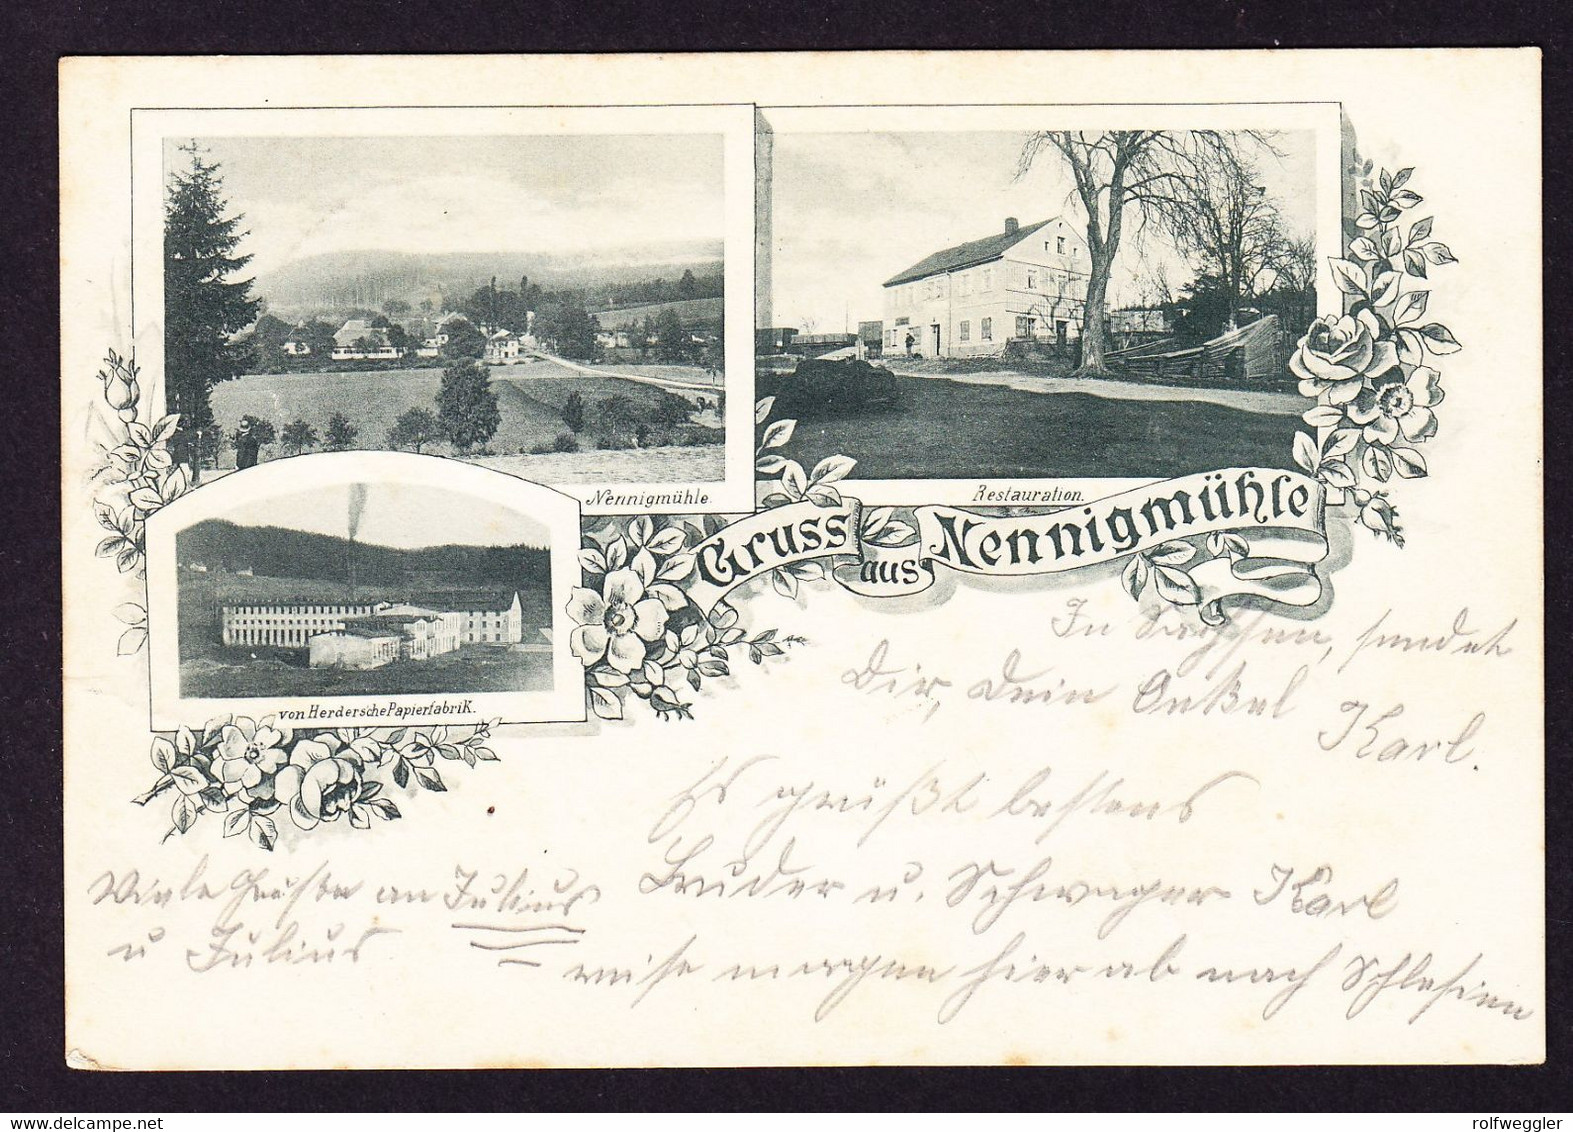 1900 Mit Bahnpost Gelaufene AK: Gruss Aus Nennigmühle, 3 Bildrig. Stempel NEUHAUSEN-POCKAU-LENGEFELD. - Lengefeld